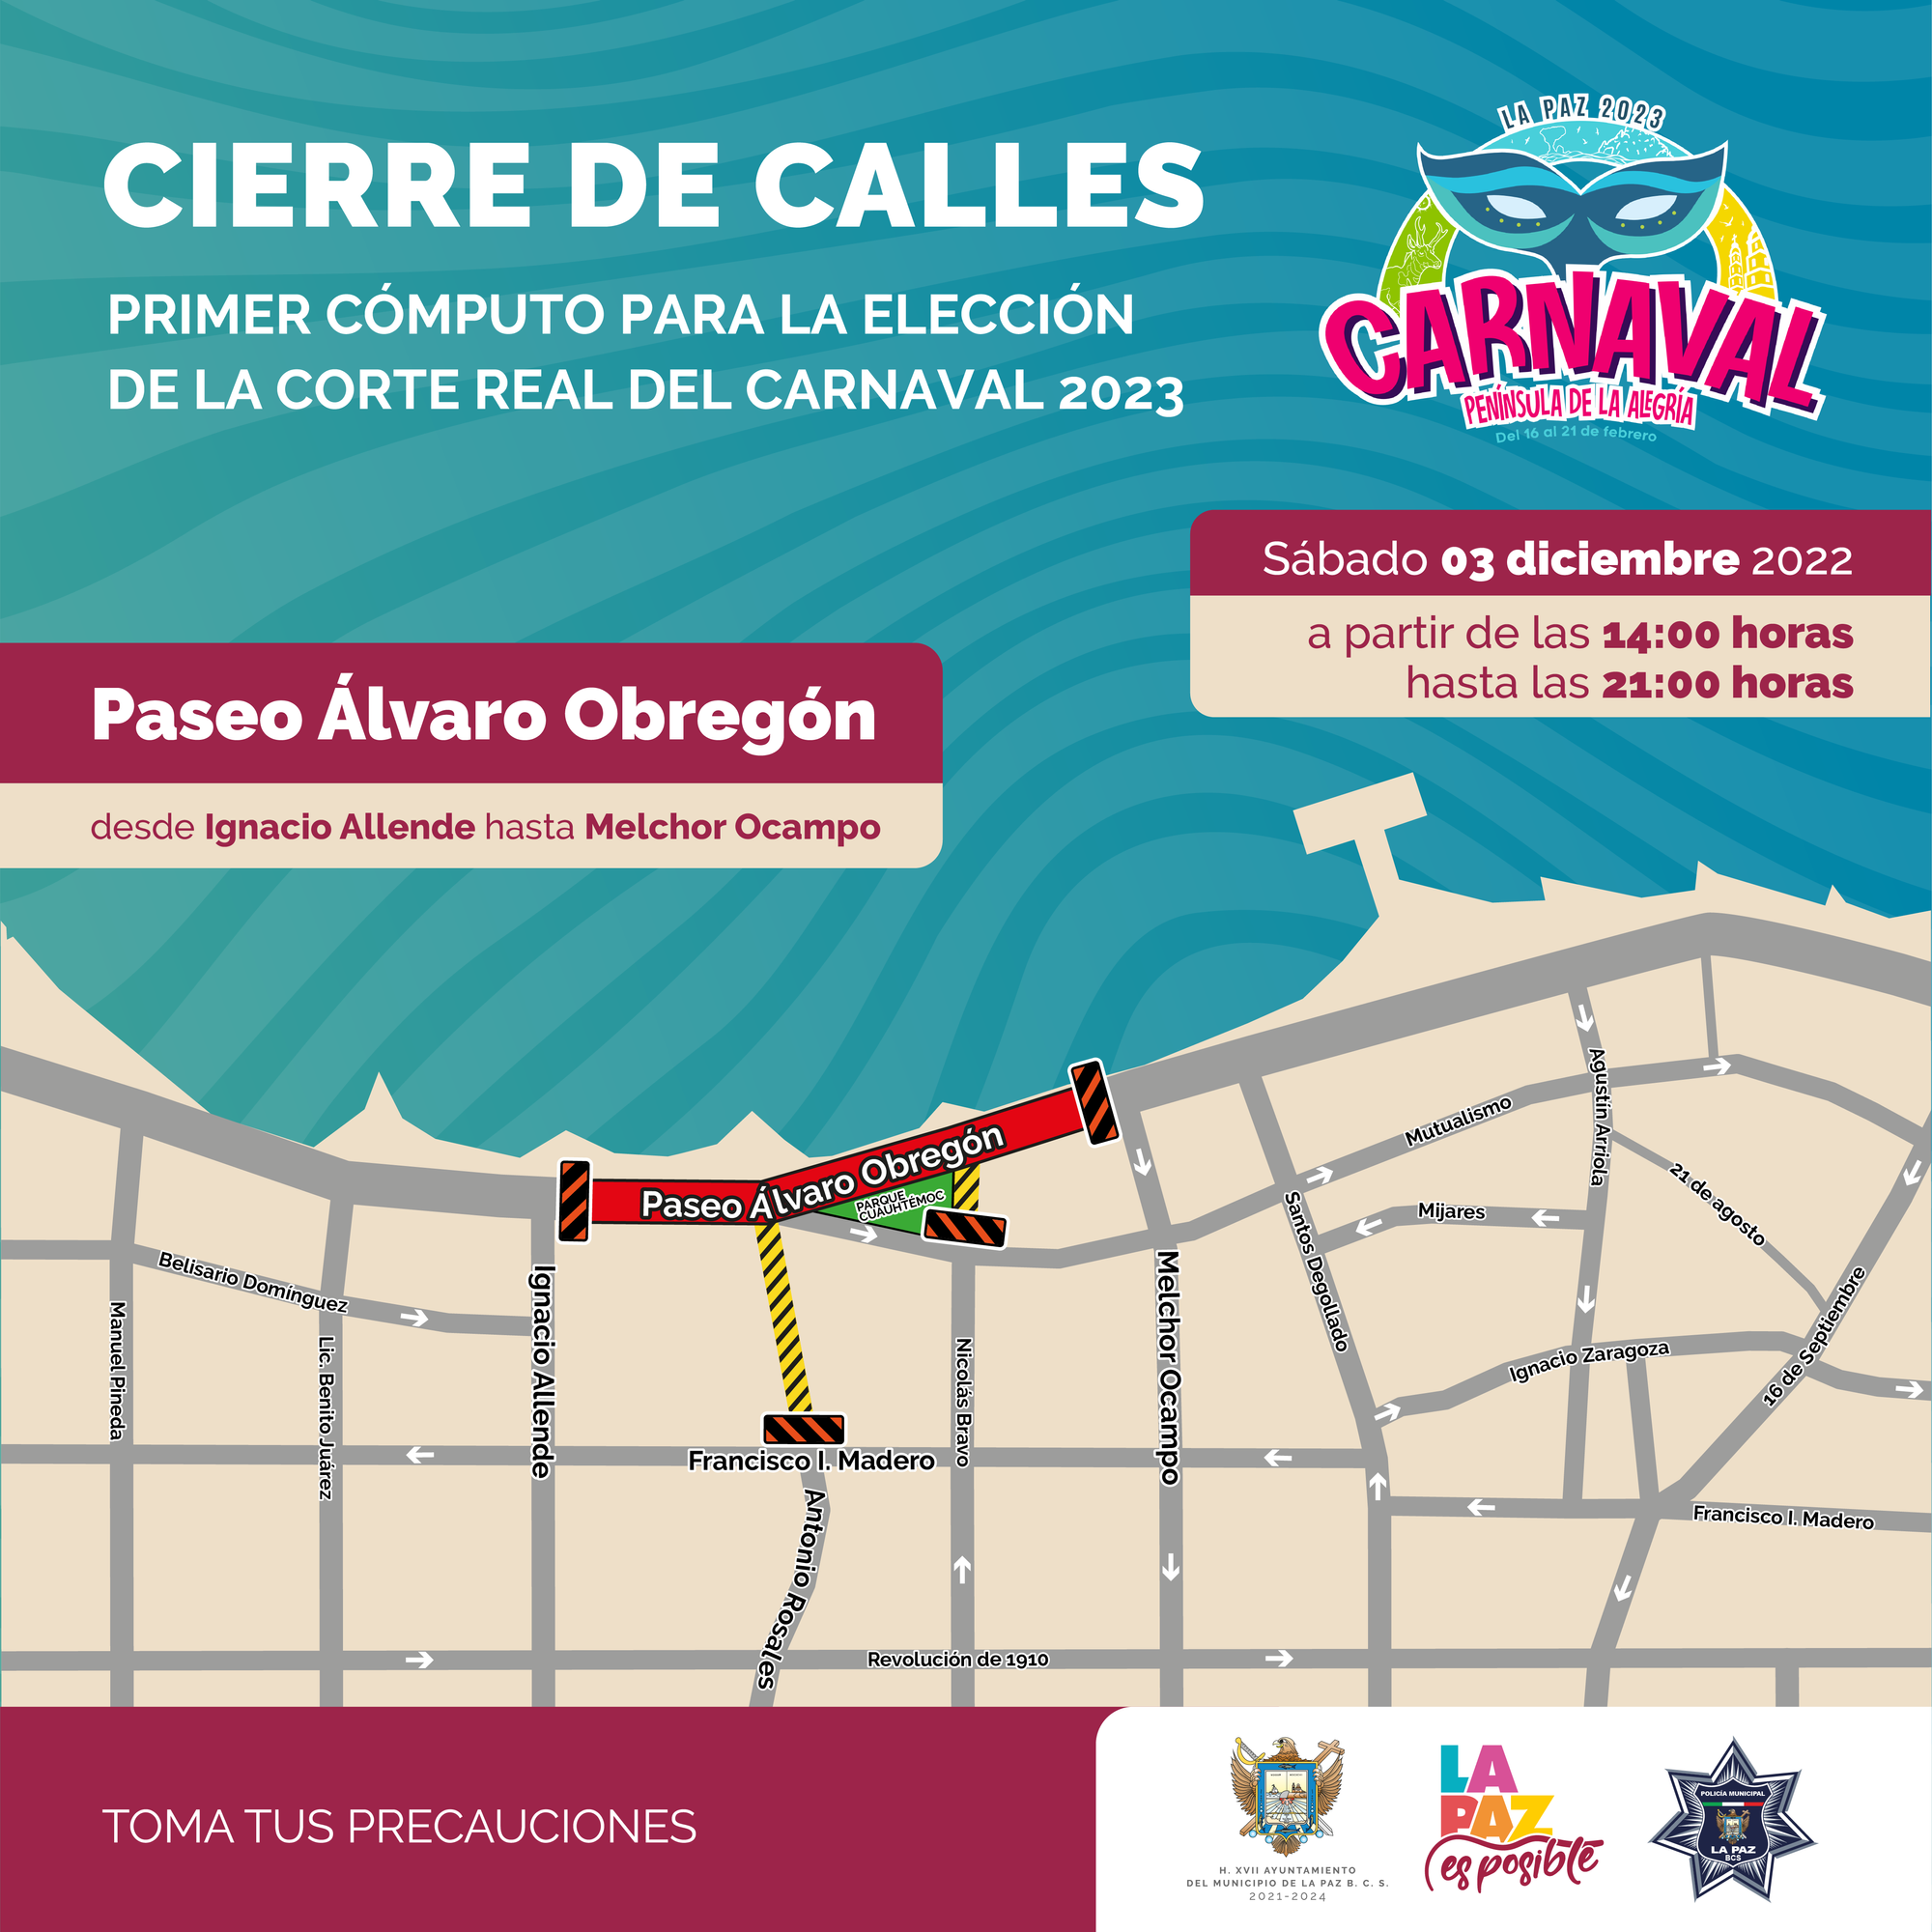 Habrá cortes a la circulación en el Malecón para este fin de semana por evento deportivo y cómputo para el Carnaval 2023